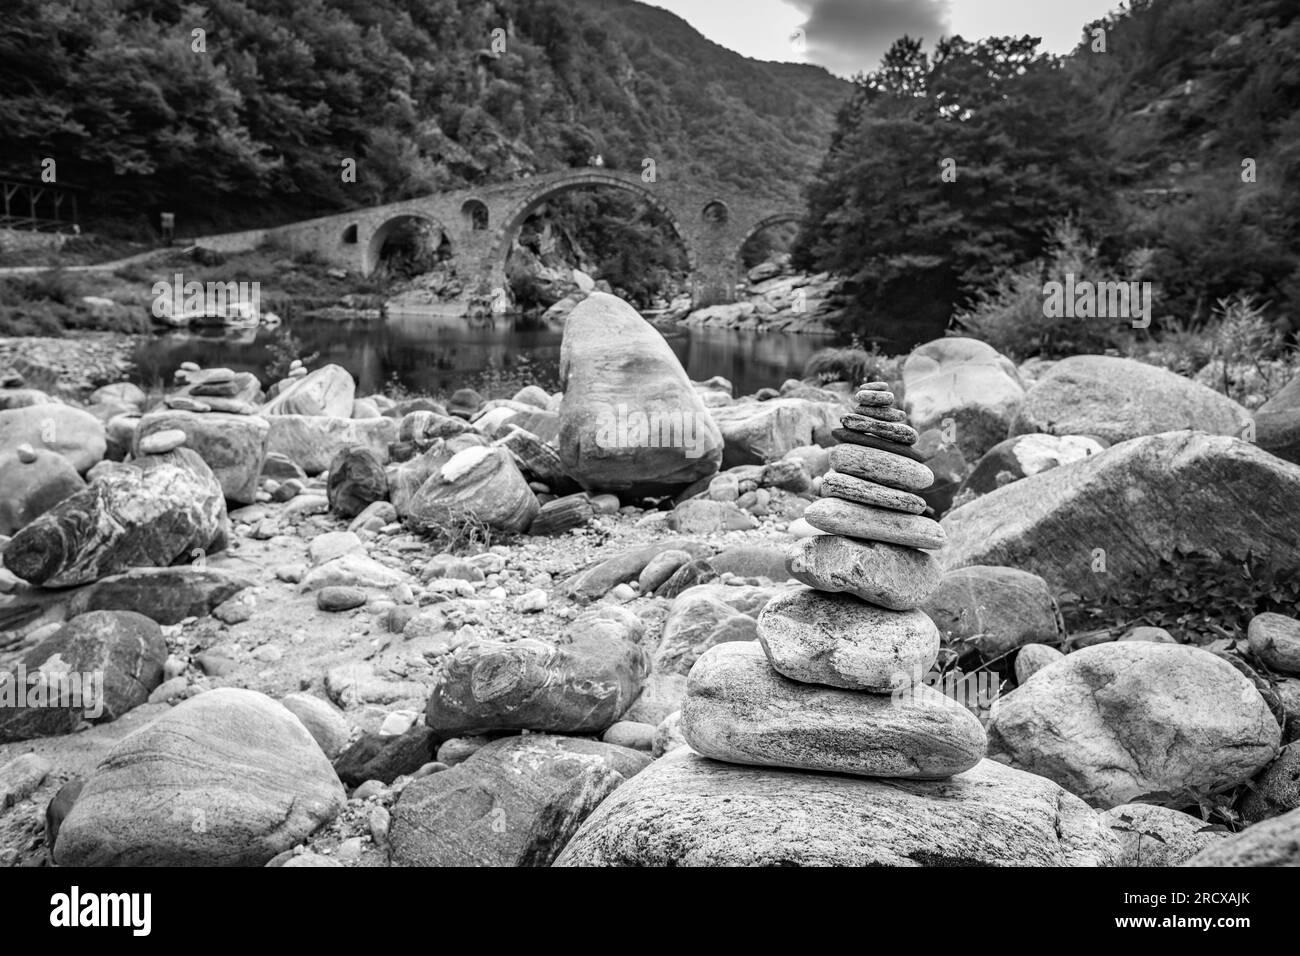 Zen kleiner Steinhaufen, flache Fokusperspektive vor der Teufelsbrücke über den Fluss Arda, Südbulgaren. Schwarzweiß-Reisefoto Stockfoto